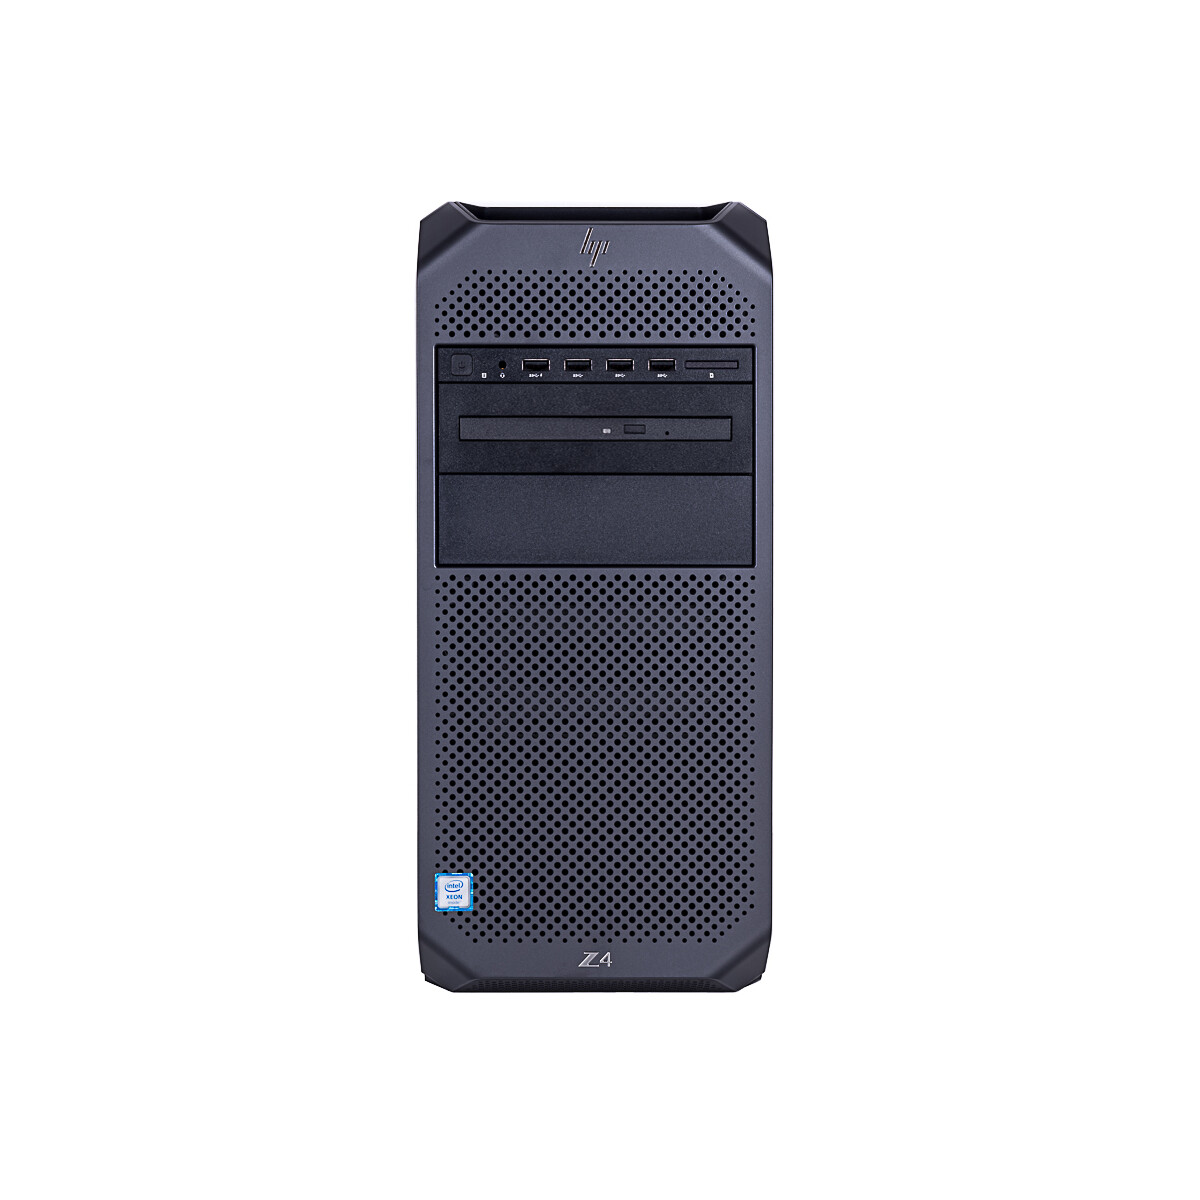 HP Z4 G4 Business Workstation 8-Core Intel Xeon W-2145, max. 4.50GHz, 32GB DDR4, 2 x 512GB M.2 NVME SSD (NEU), NVIDIA Quadro P5000 (16GB), WIN 10 Pro